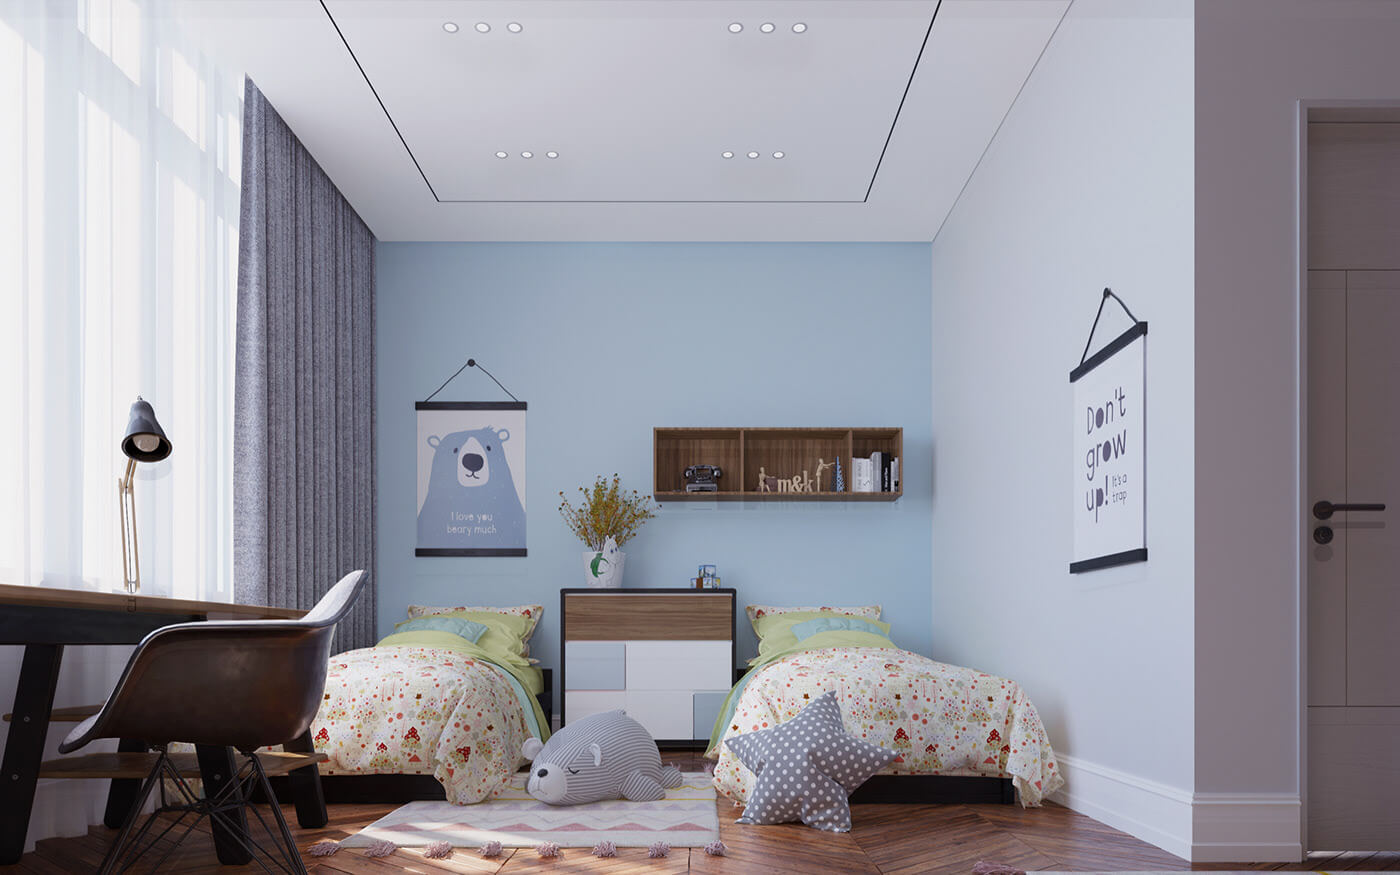 Thiết kế phòng ngủ lưu thông không khí dễ dàng